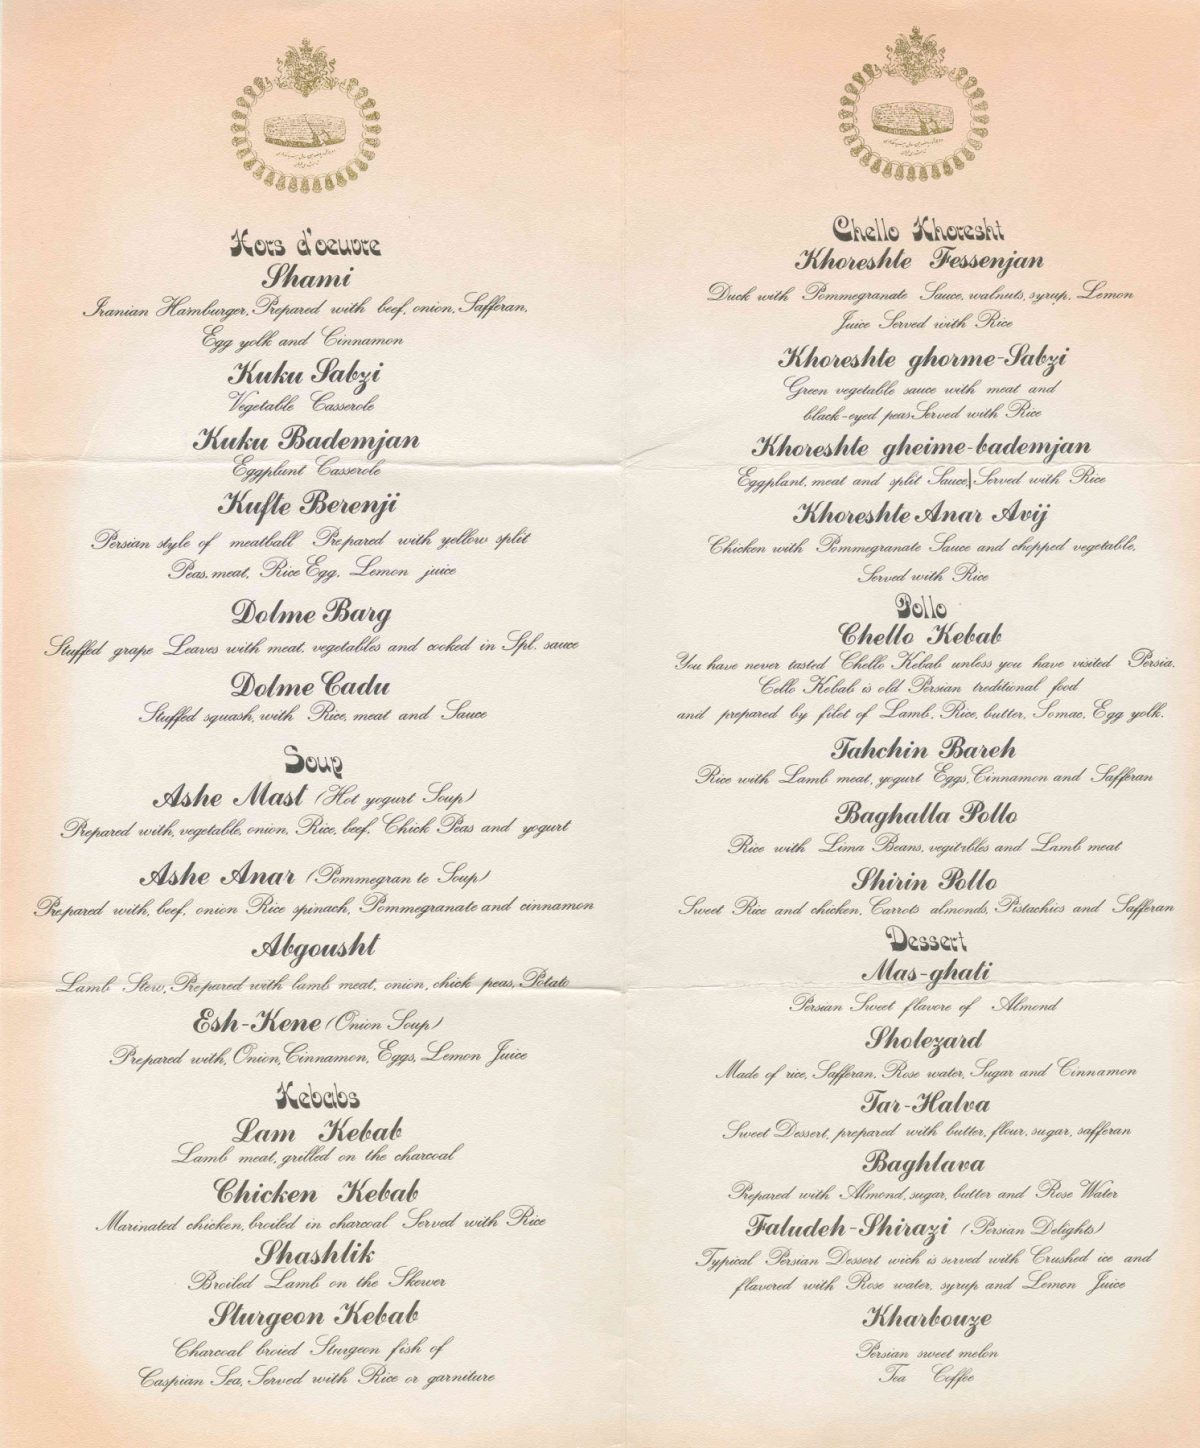 Menü in Persisch und Englisch für das Gala-Dinner des Schahs von Persien in Persepolis am 15. Oktober 1971